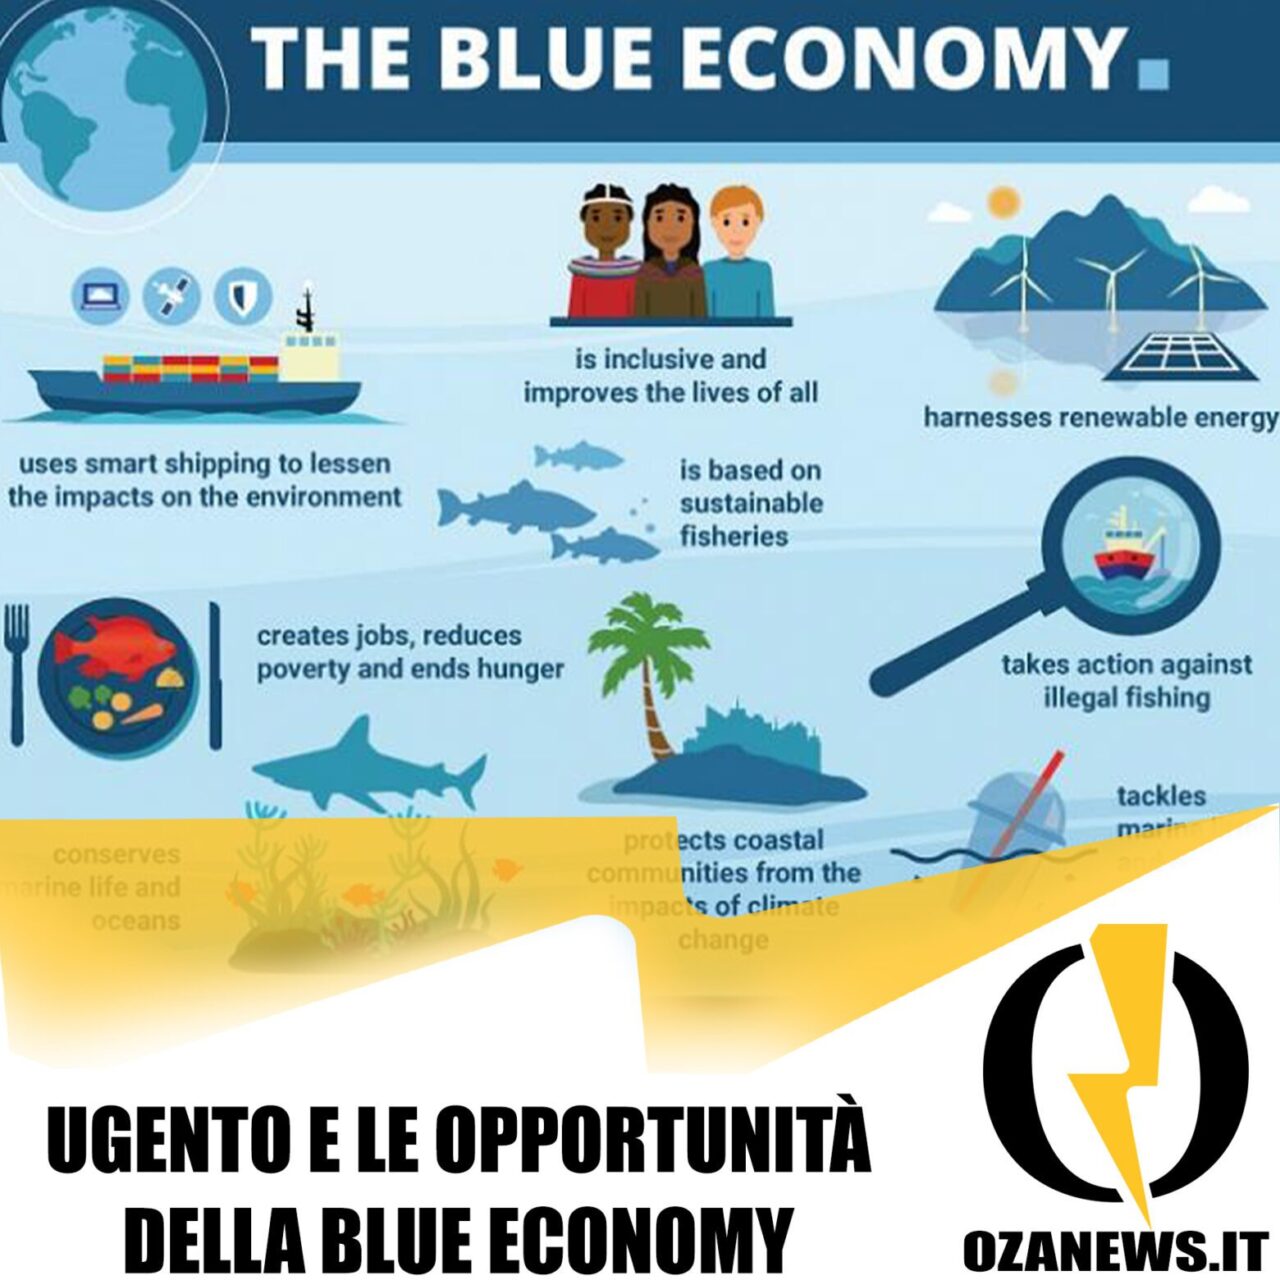 Ugento e le opportunità della blue economy